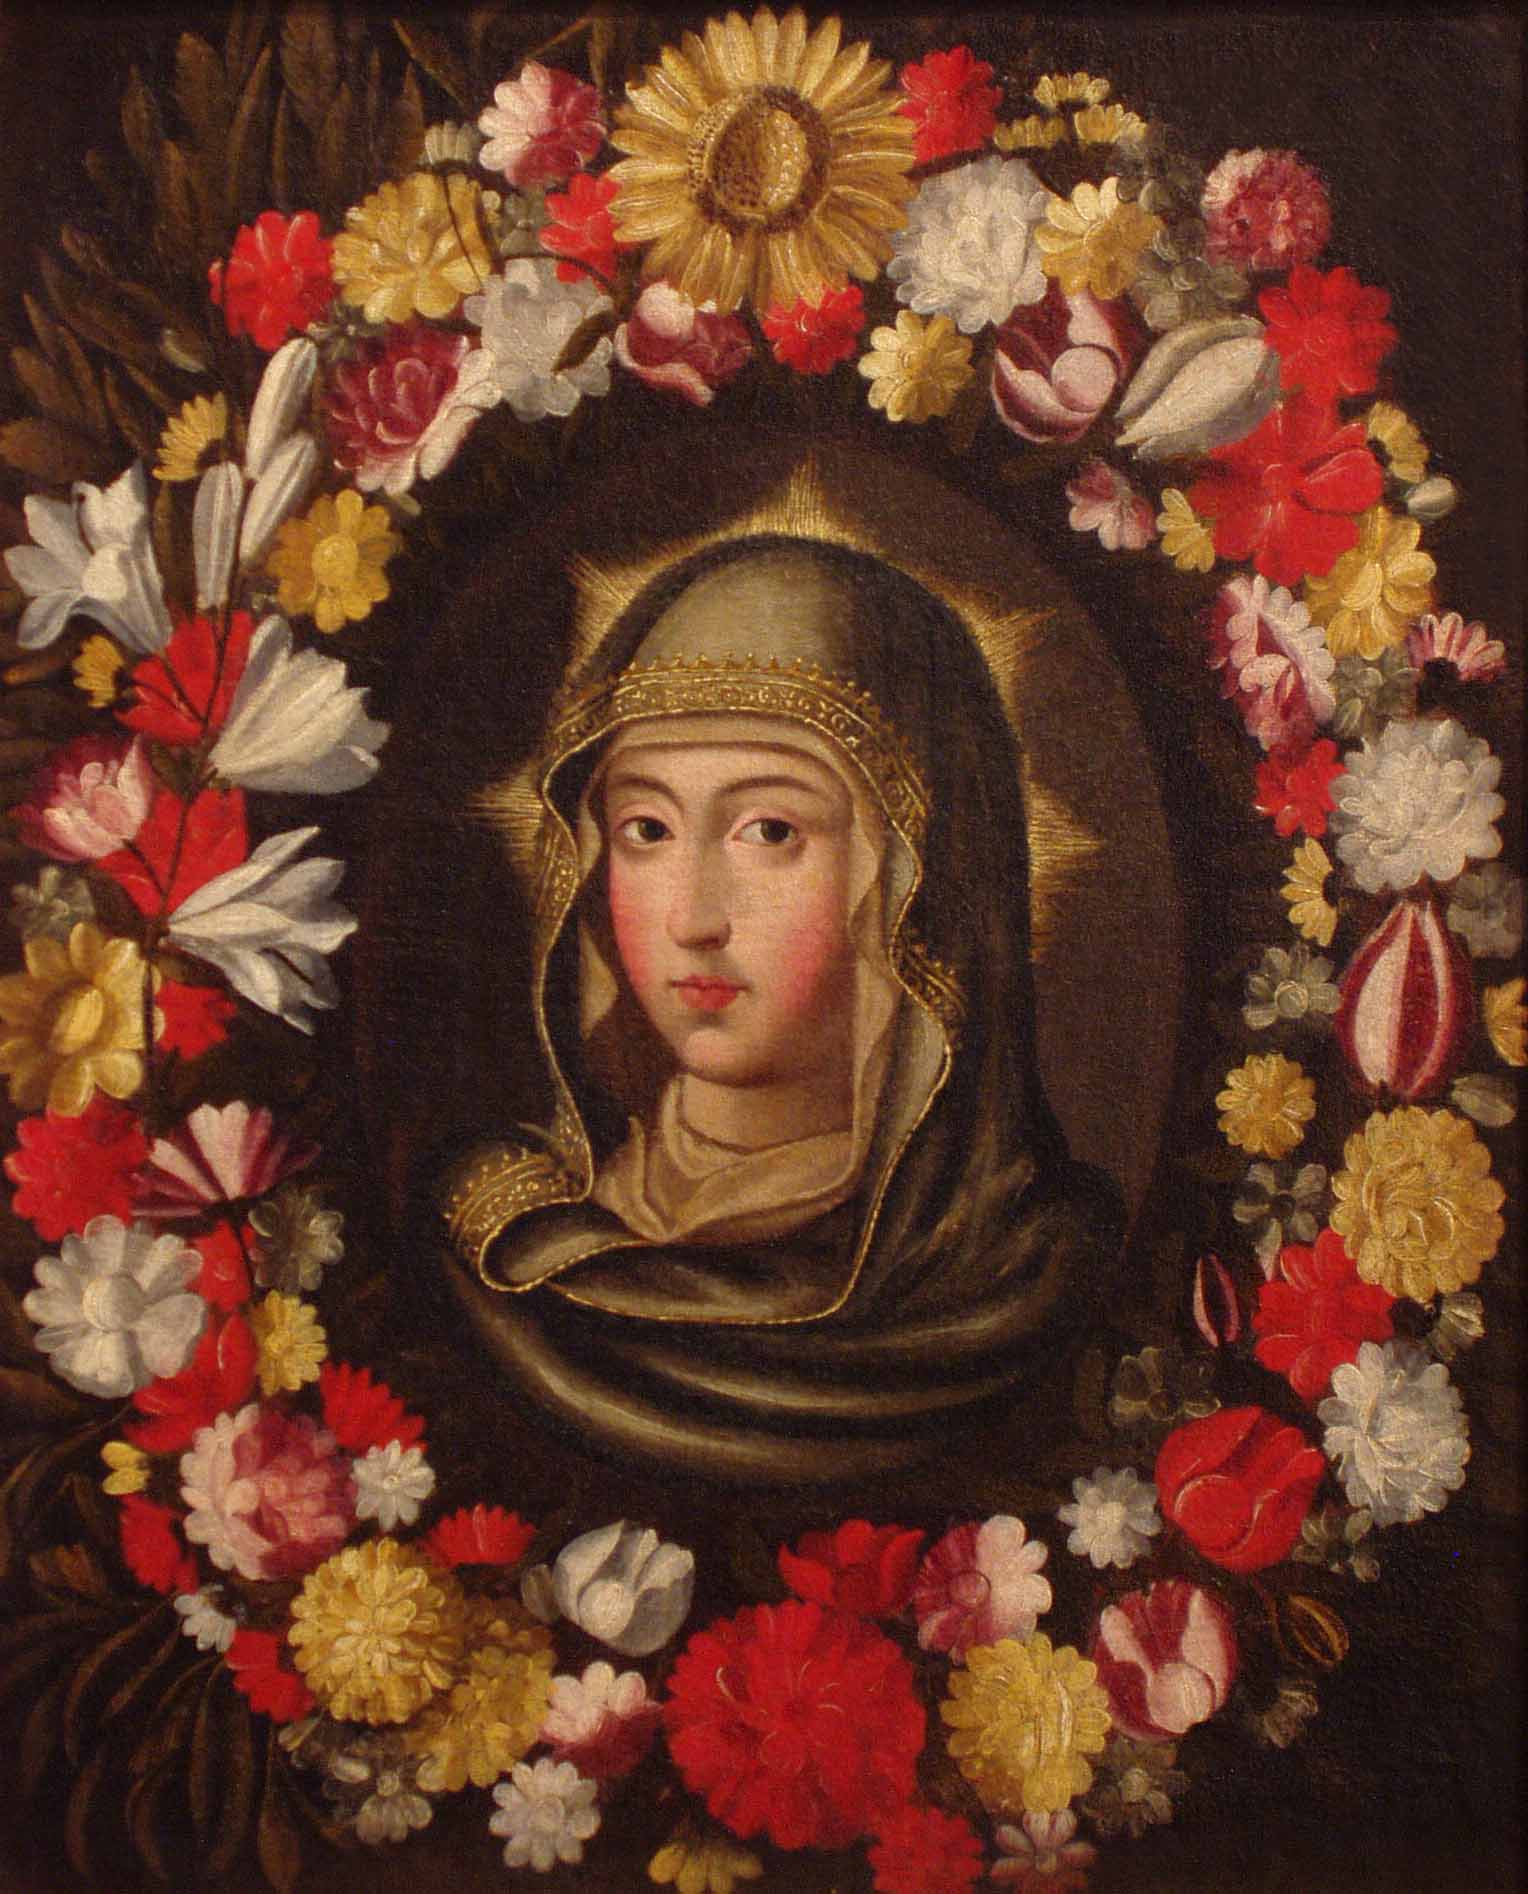 Isabel la Católica es la protagonista de la edición de abril del ciclo ‘Miradas a la colección’ en la Casa de Colón